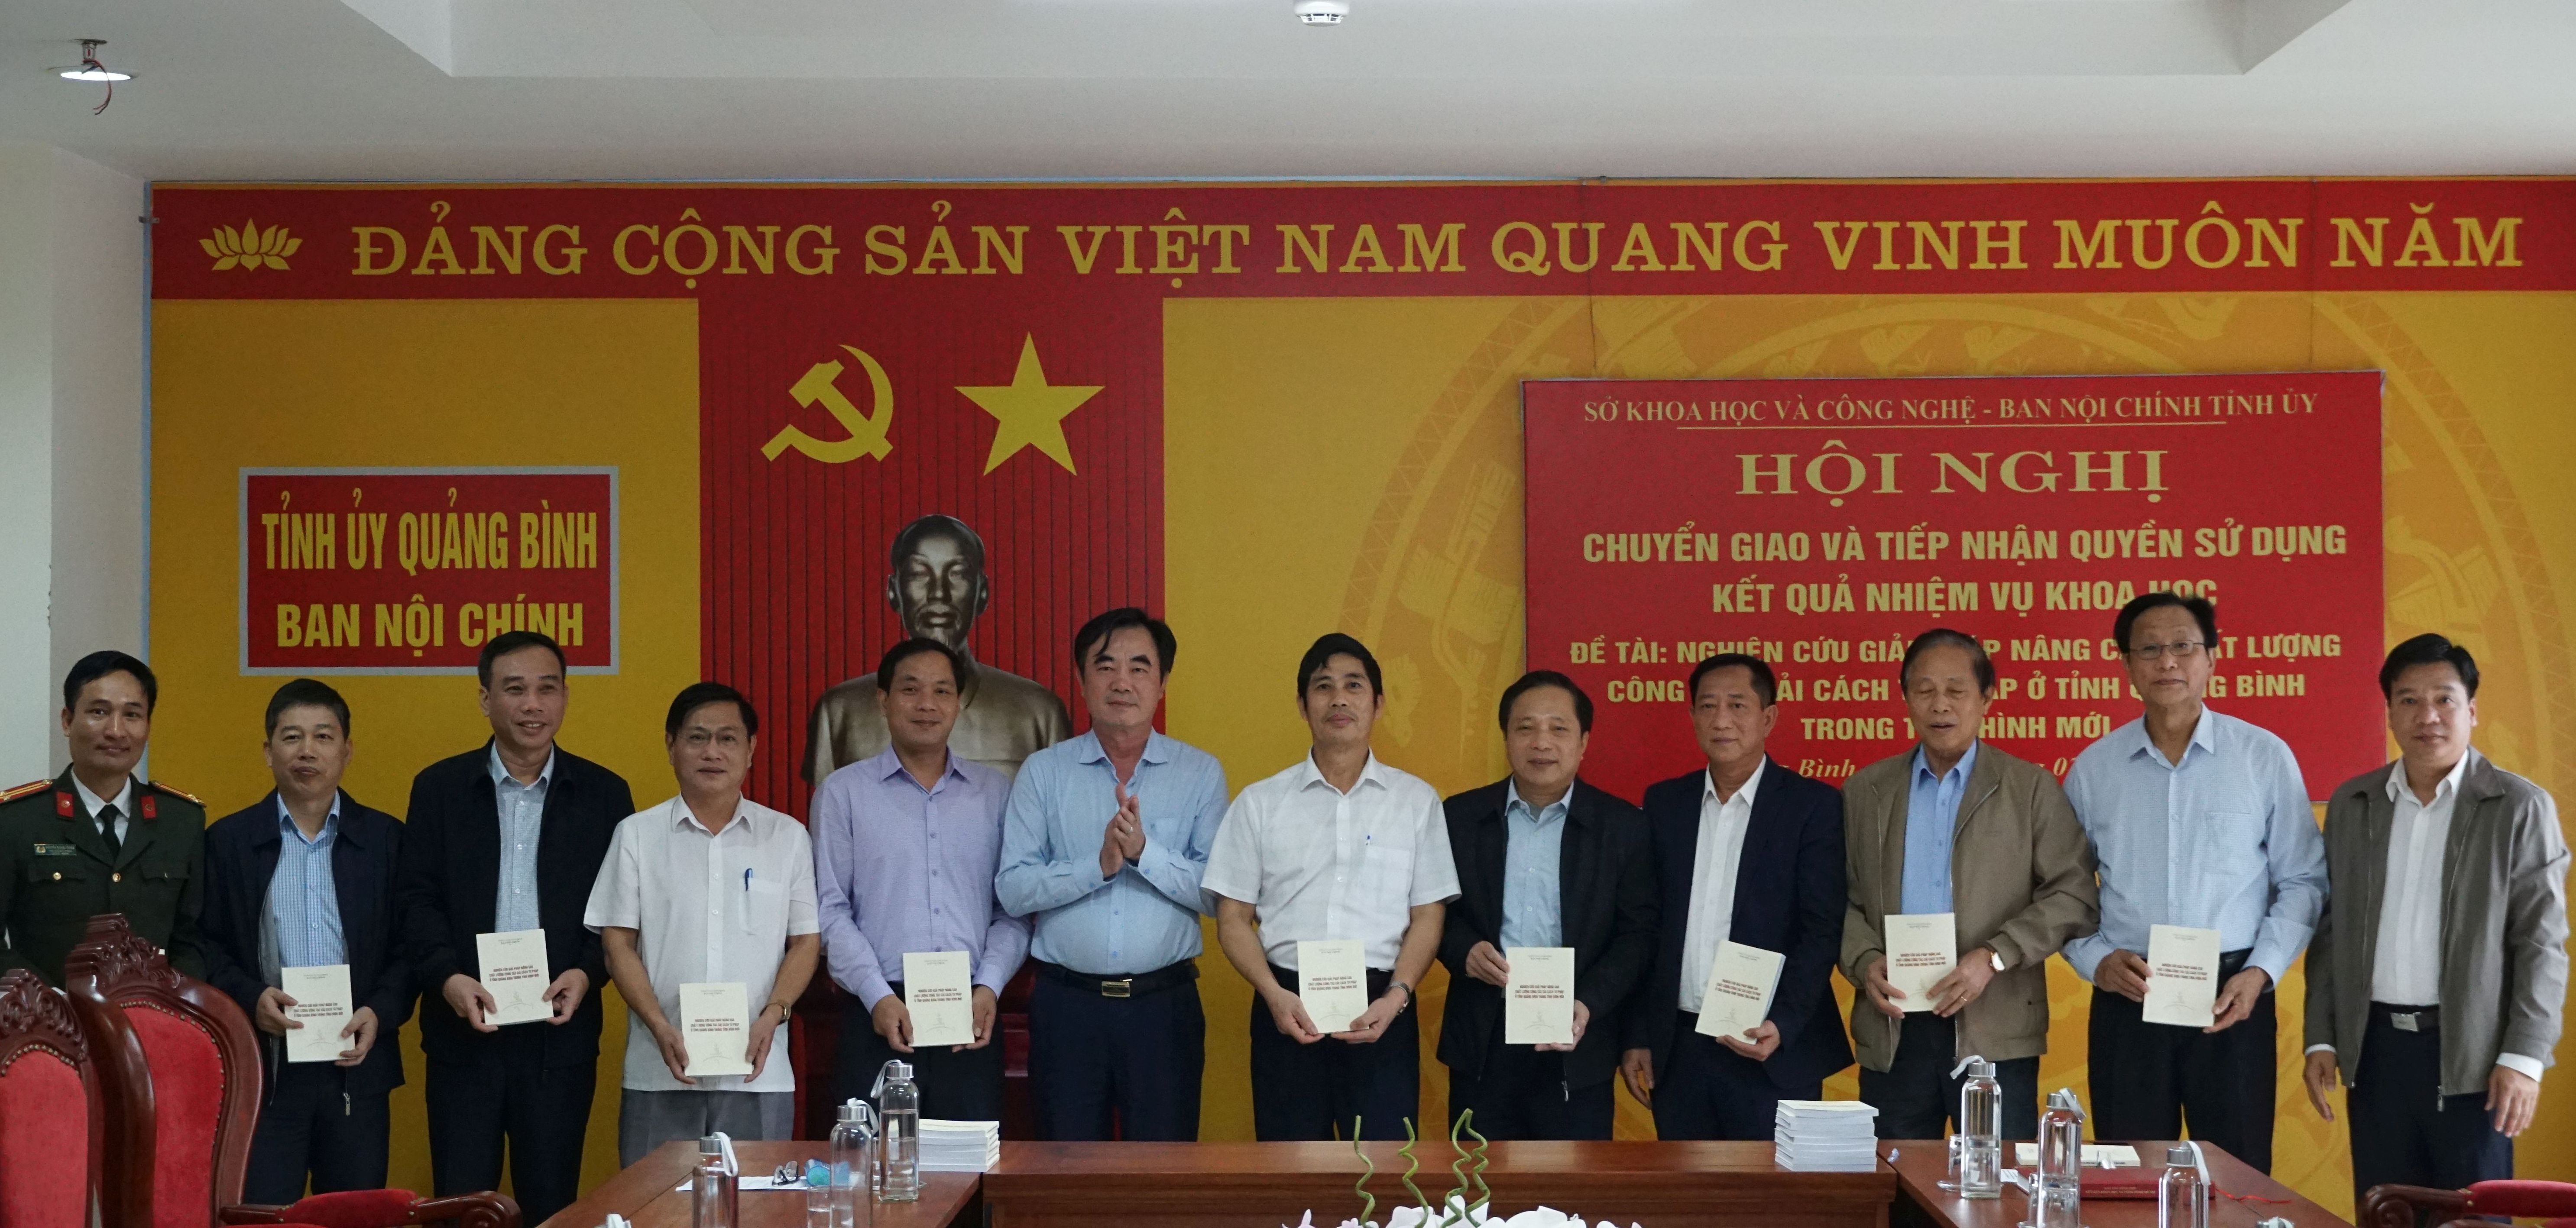 Đồng chí, Trưởng ban Nội chính Tỉnh ủy Nguyễn Lương Bình tặng sách đề tài khoa học: “Nghiên cứu giải pháp nâng cao chất lượng công tác CCTP ở tỉnh Quảng Bình trong tình hình mới” cho các đại biểu.